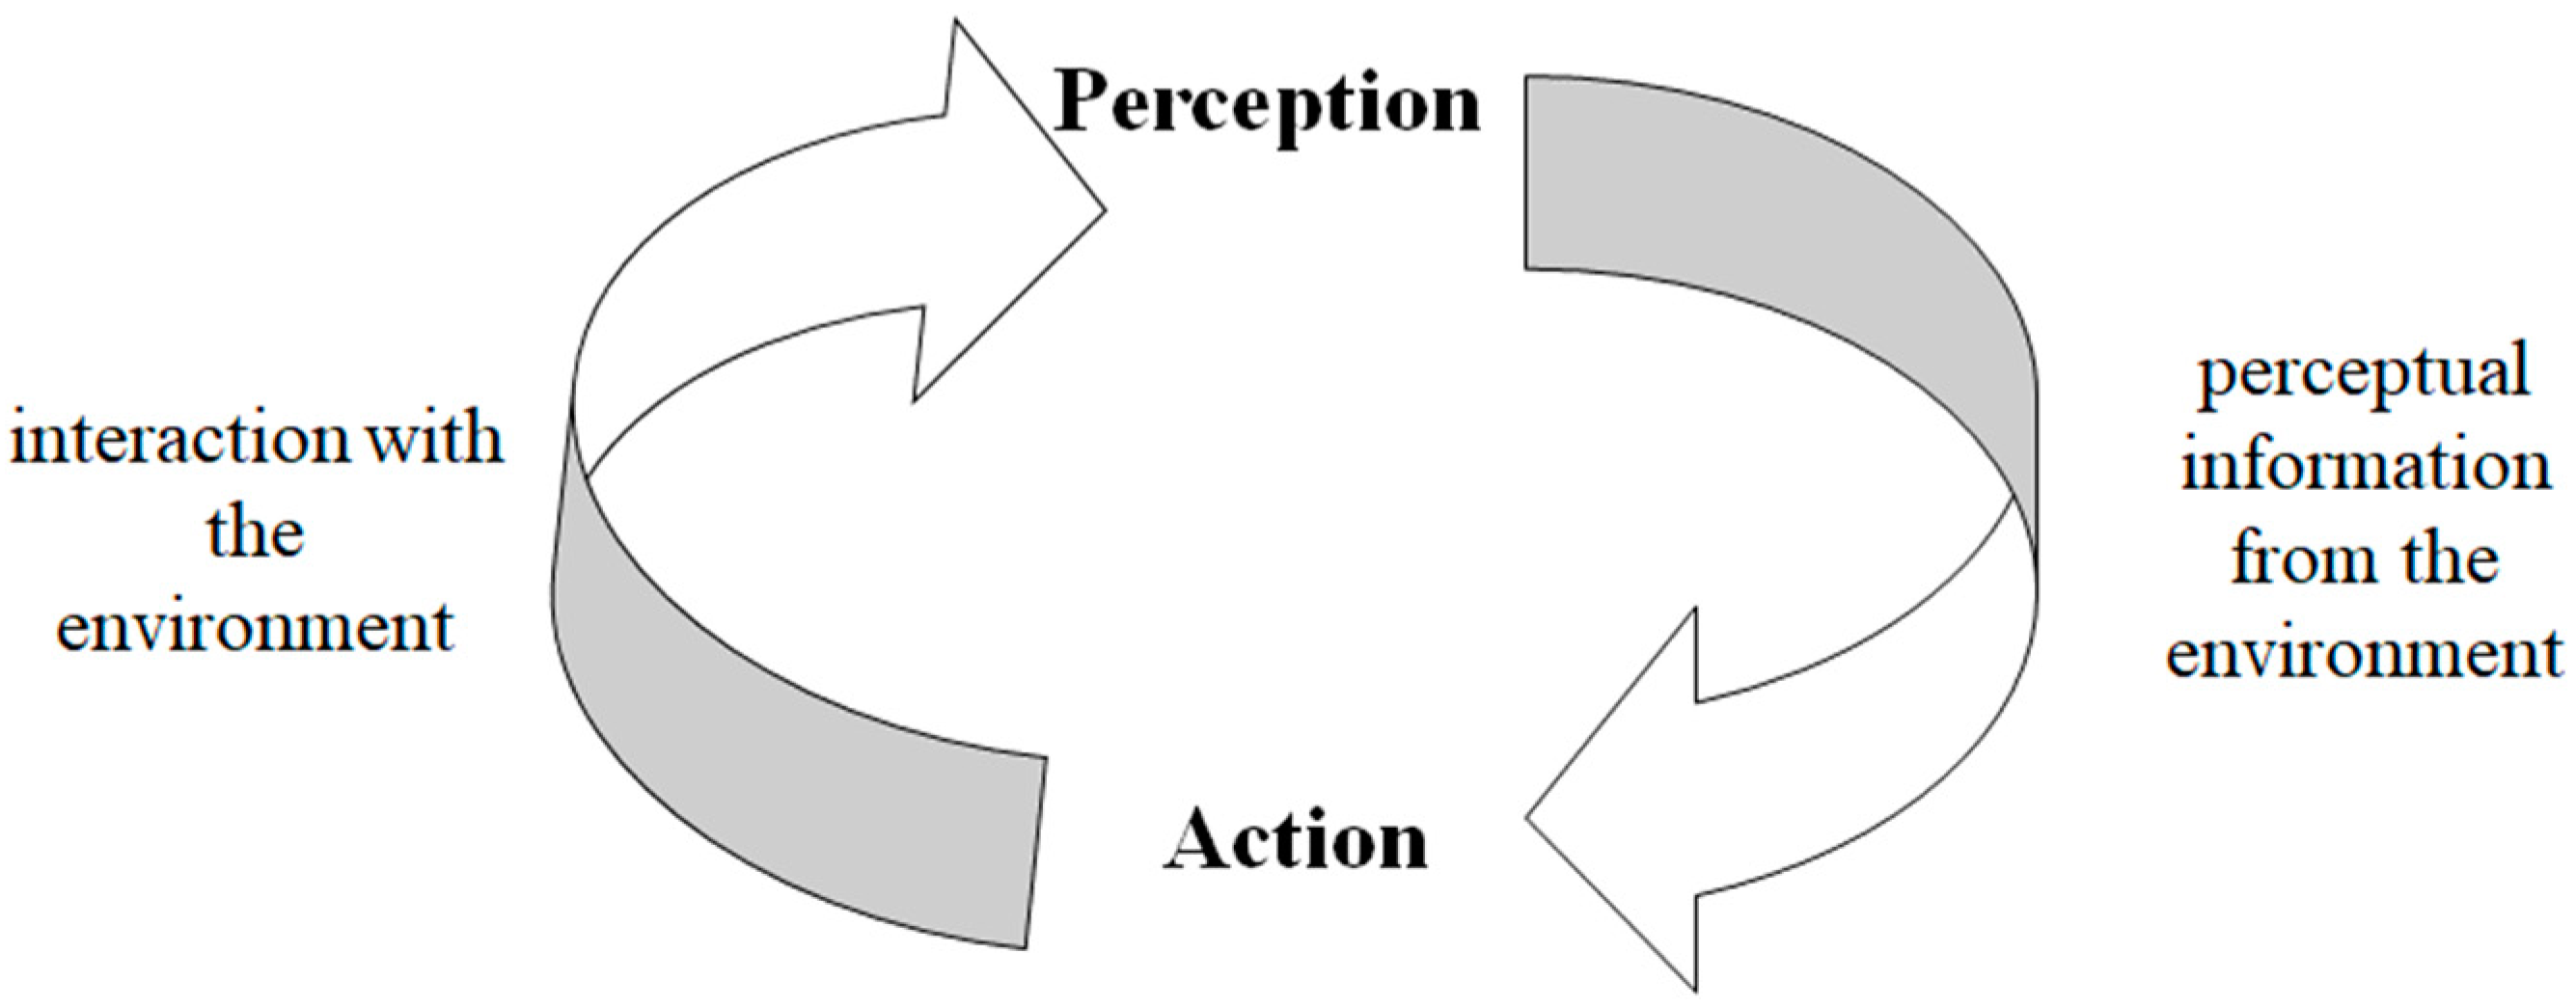 Un diagrama con una flecha apuntando en ambos sentidos describe mejor la relación entre percepción y acción. Este gráfico muestra los datos proporcionados en la leyenda de la figura